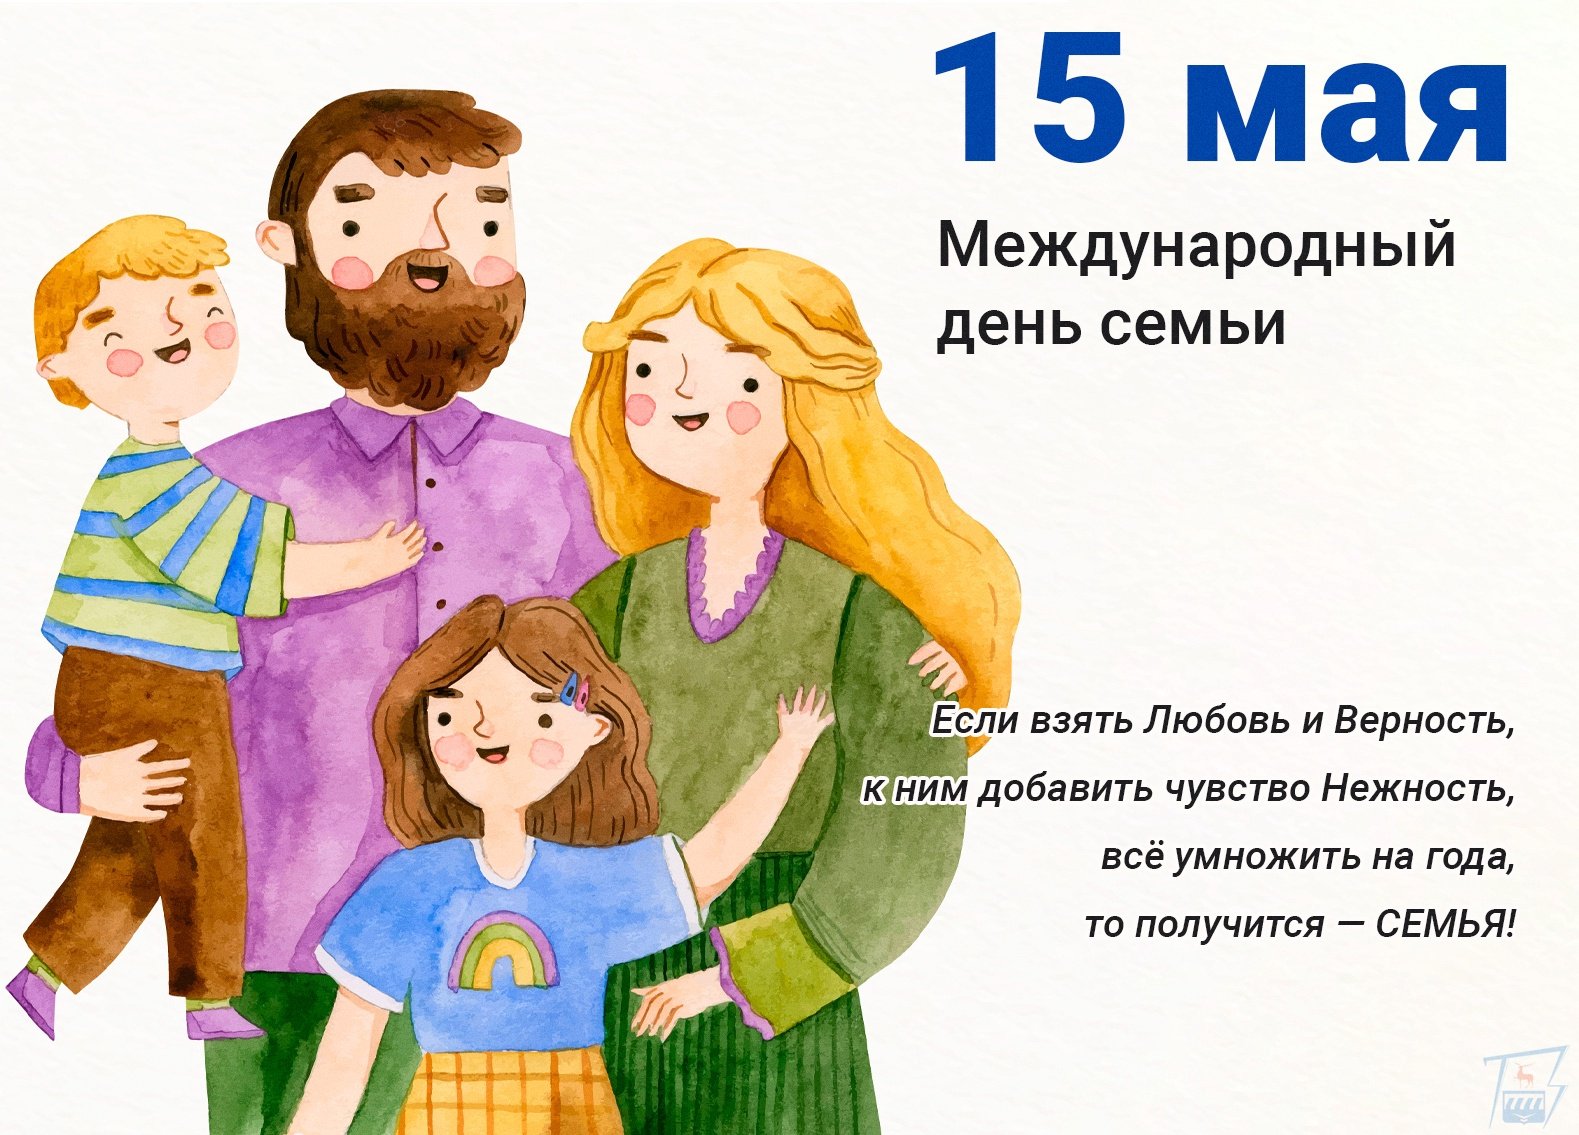 Название к году семьи 2024. Международный день семьи. 15 Мая Международный день семьи. 15 Мая Международный день семьи картинки. Международный день семьи в 2024.